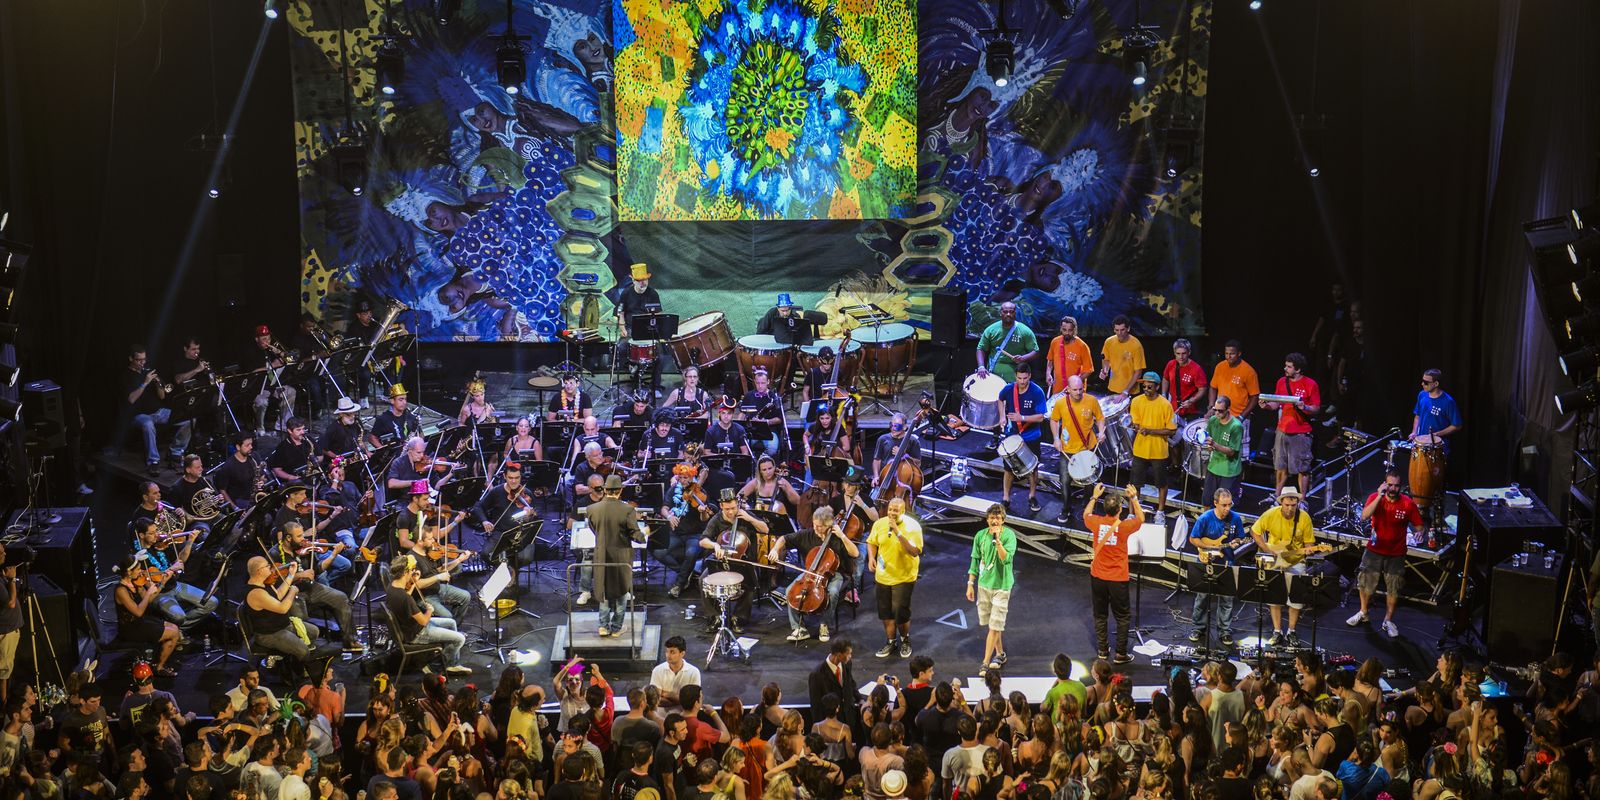 Orquestra da Petrobras e Monobloco se unem para baile sinfônico no Rio